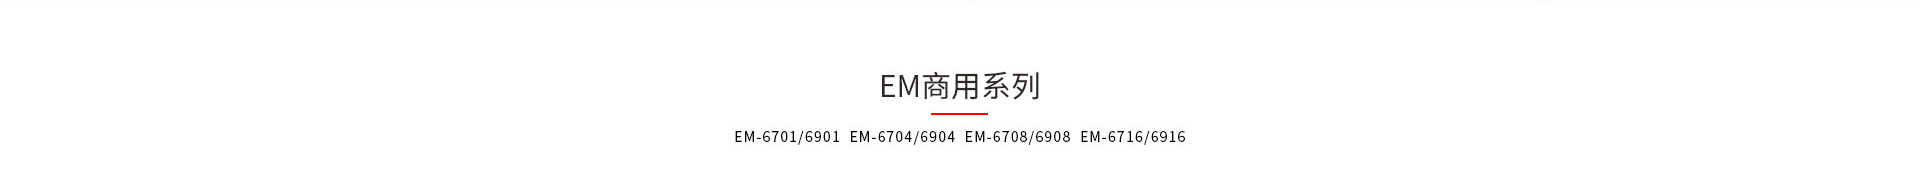 九游会卫士EM和EMI系列kvm切换器产品型号大全